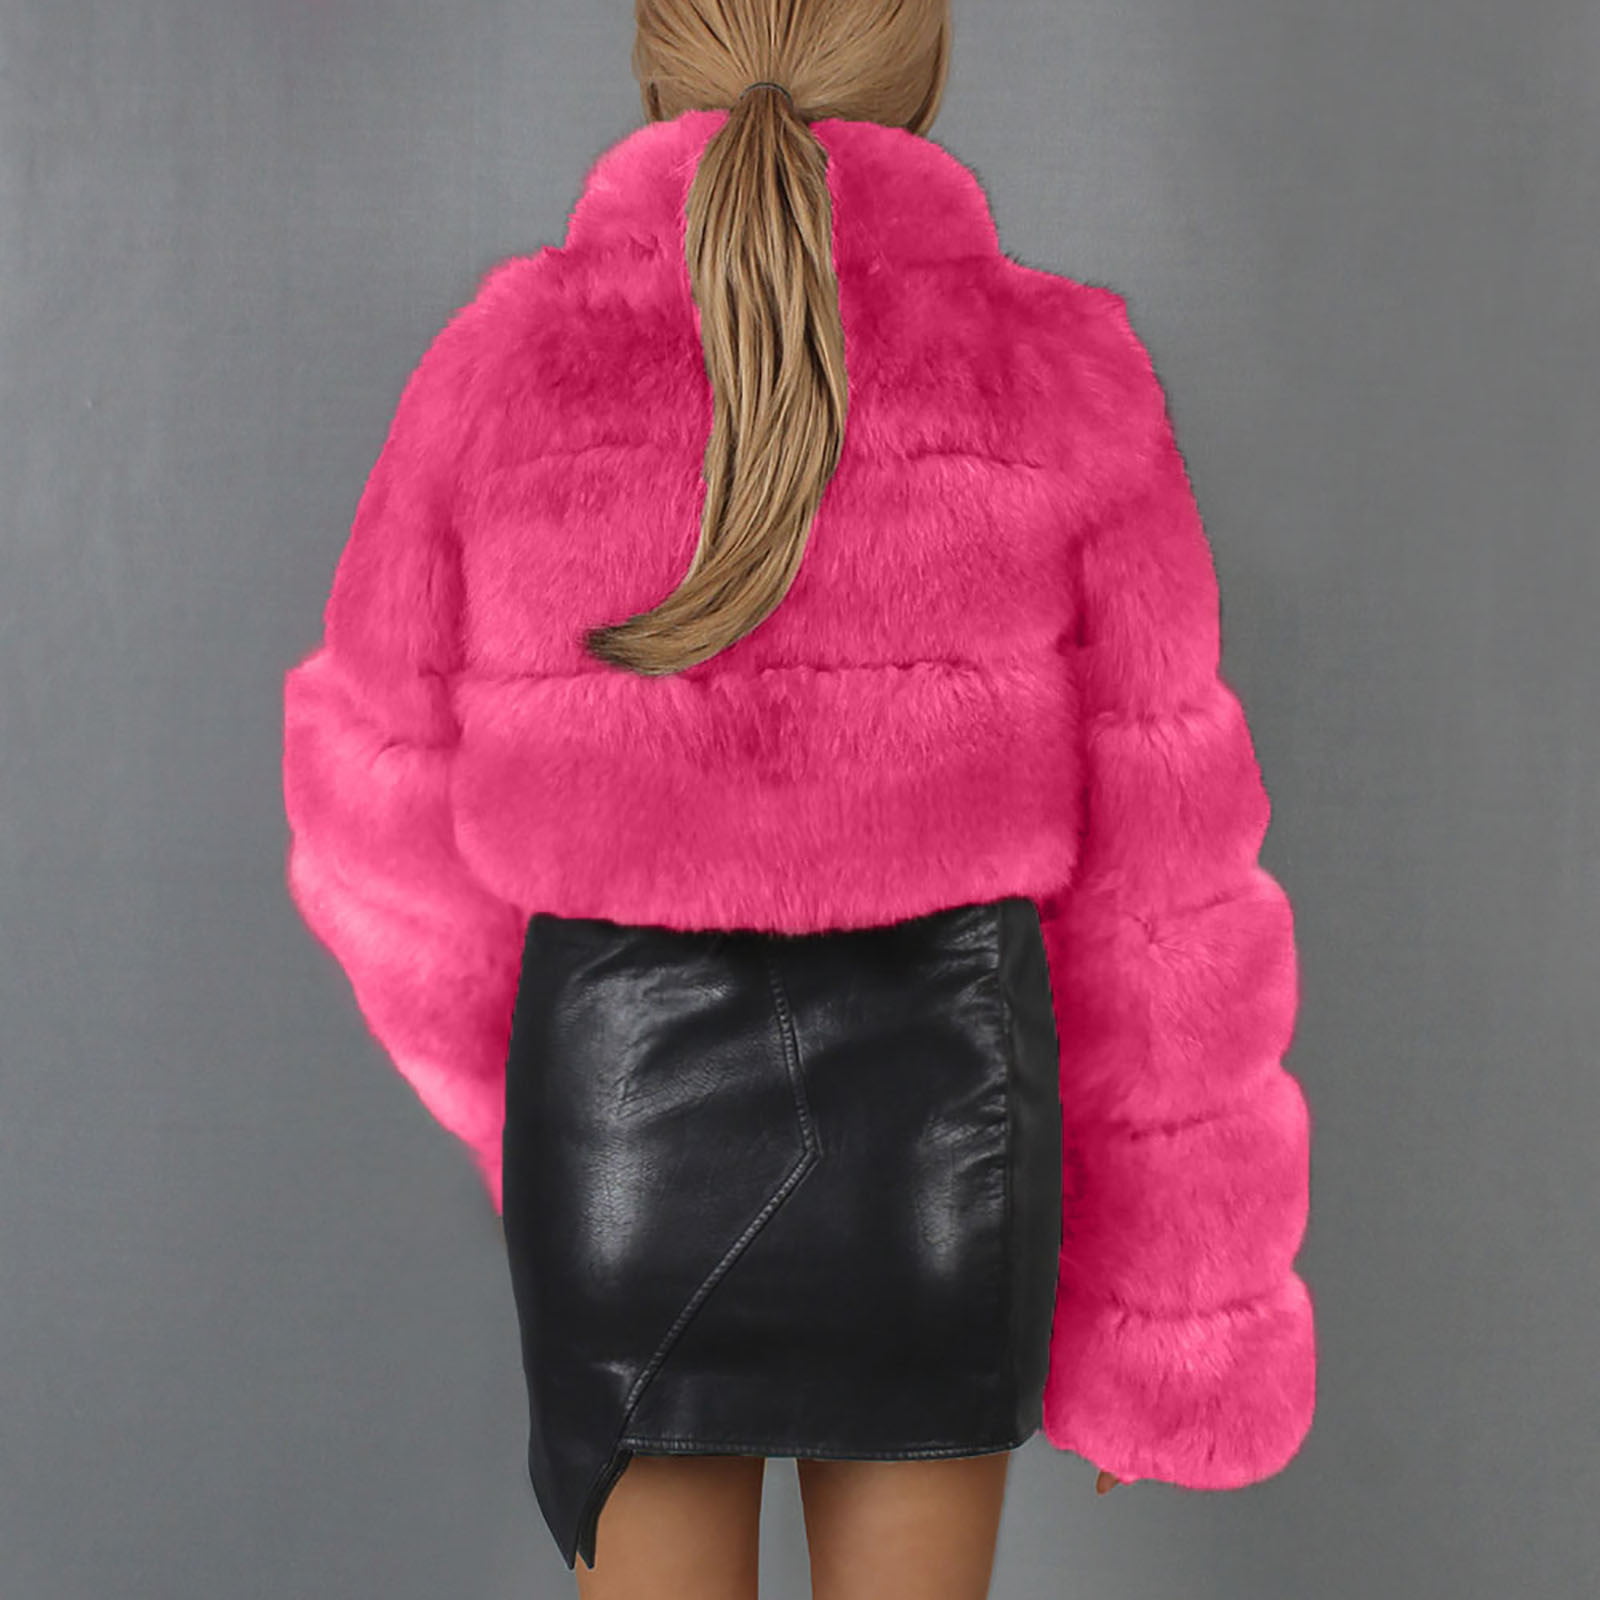 Herrnalise Women's Faux Fur Coat Shearling Fluffy Fuzzy Shaggy Hood  Sherpa-Lined Fleece Jacket Hot Pink,XXXL 